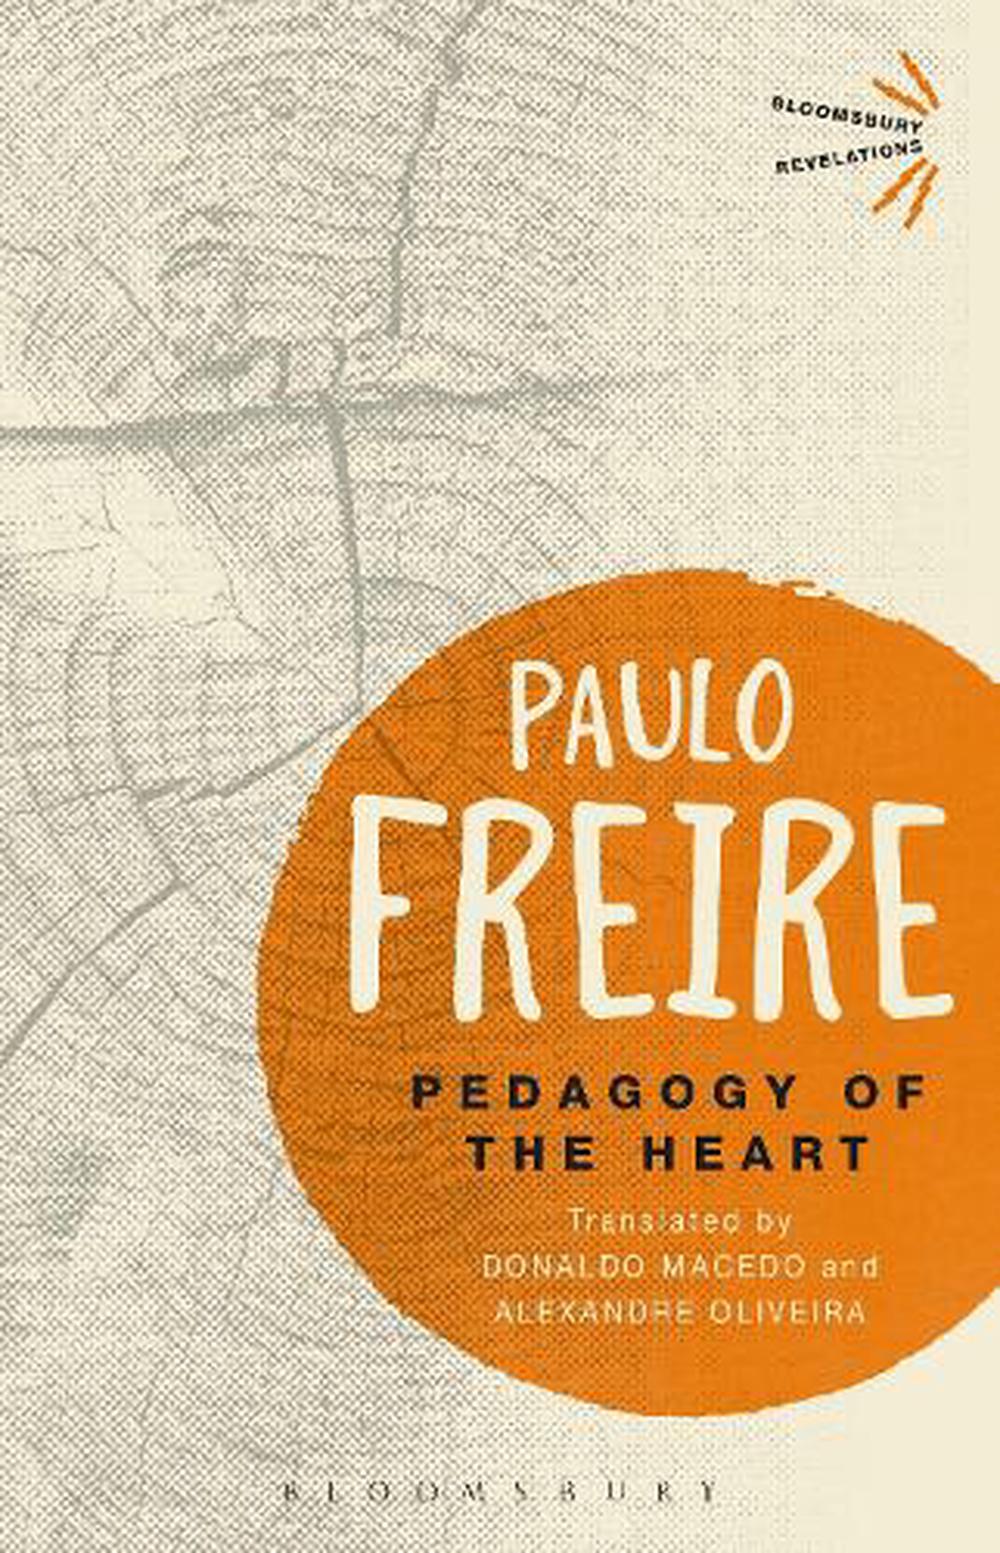 paulo freire pedagogy of hope